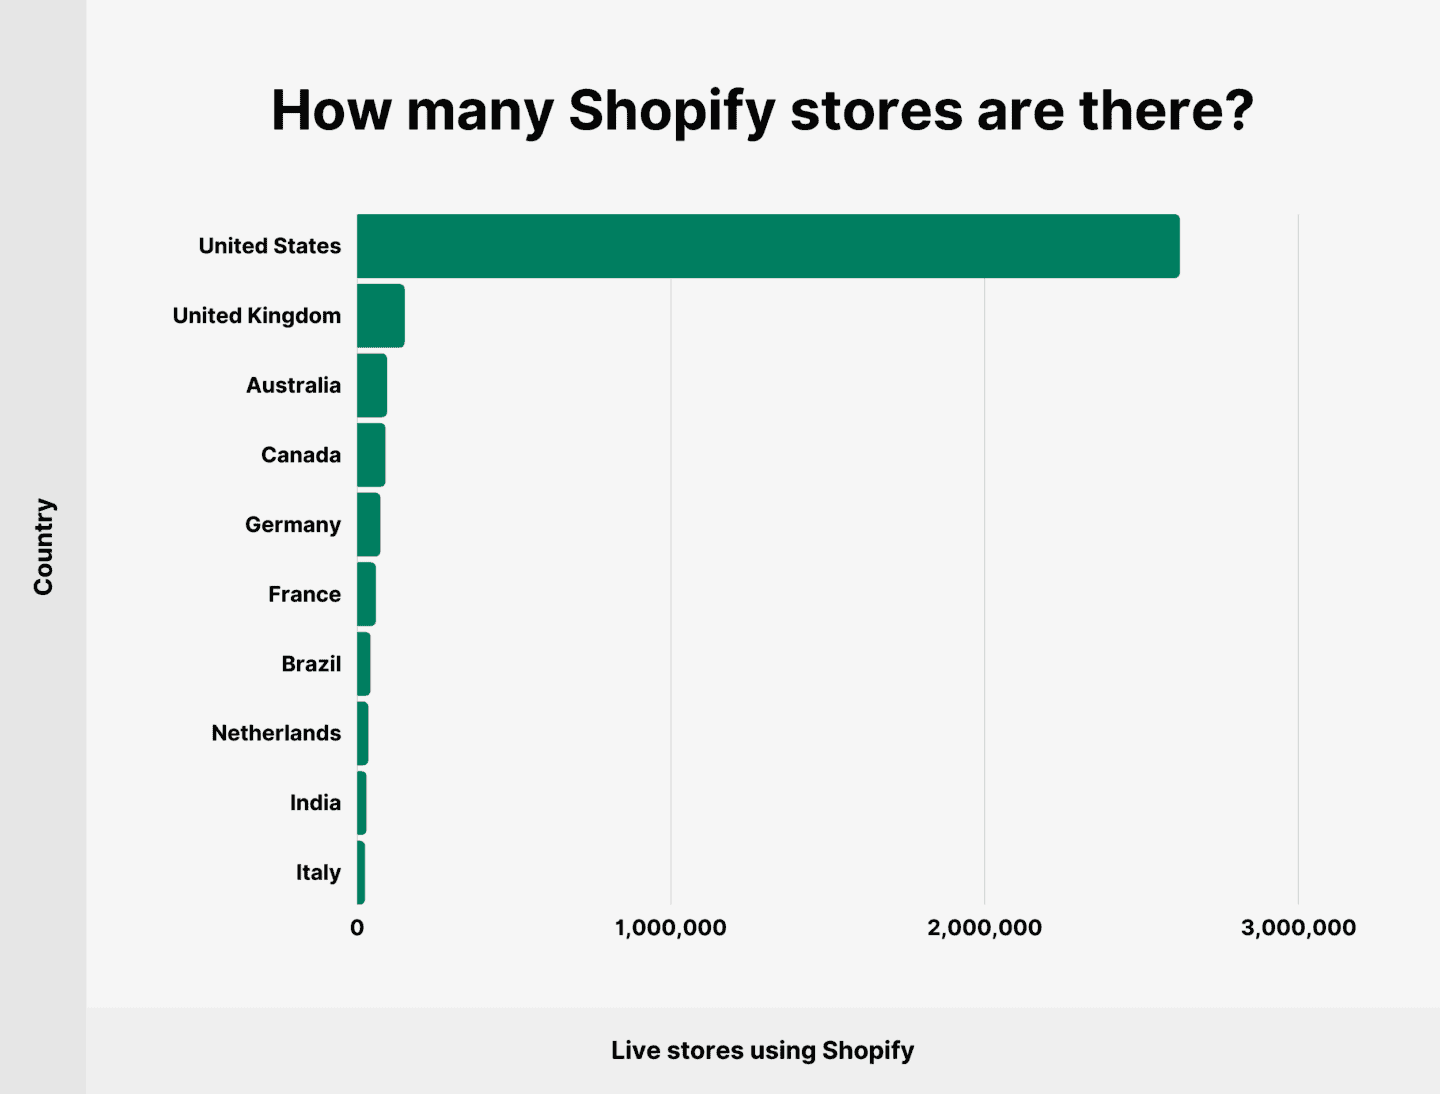 Die meisten Shopify-Shops befinden sich derzeit in den Vereinigten Staaten